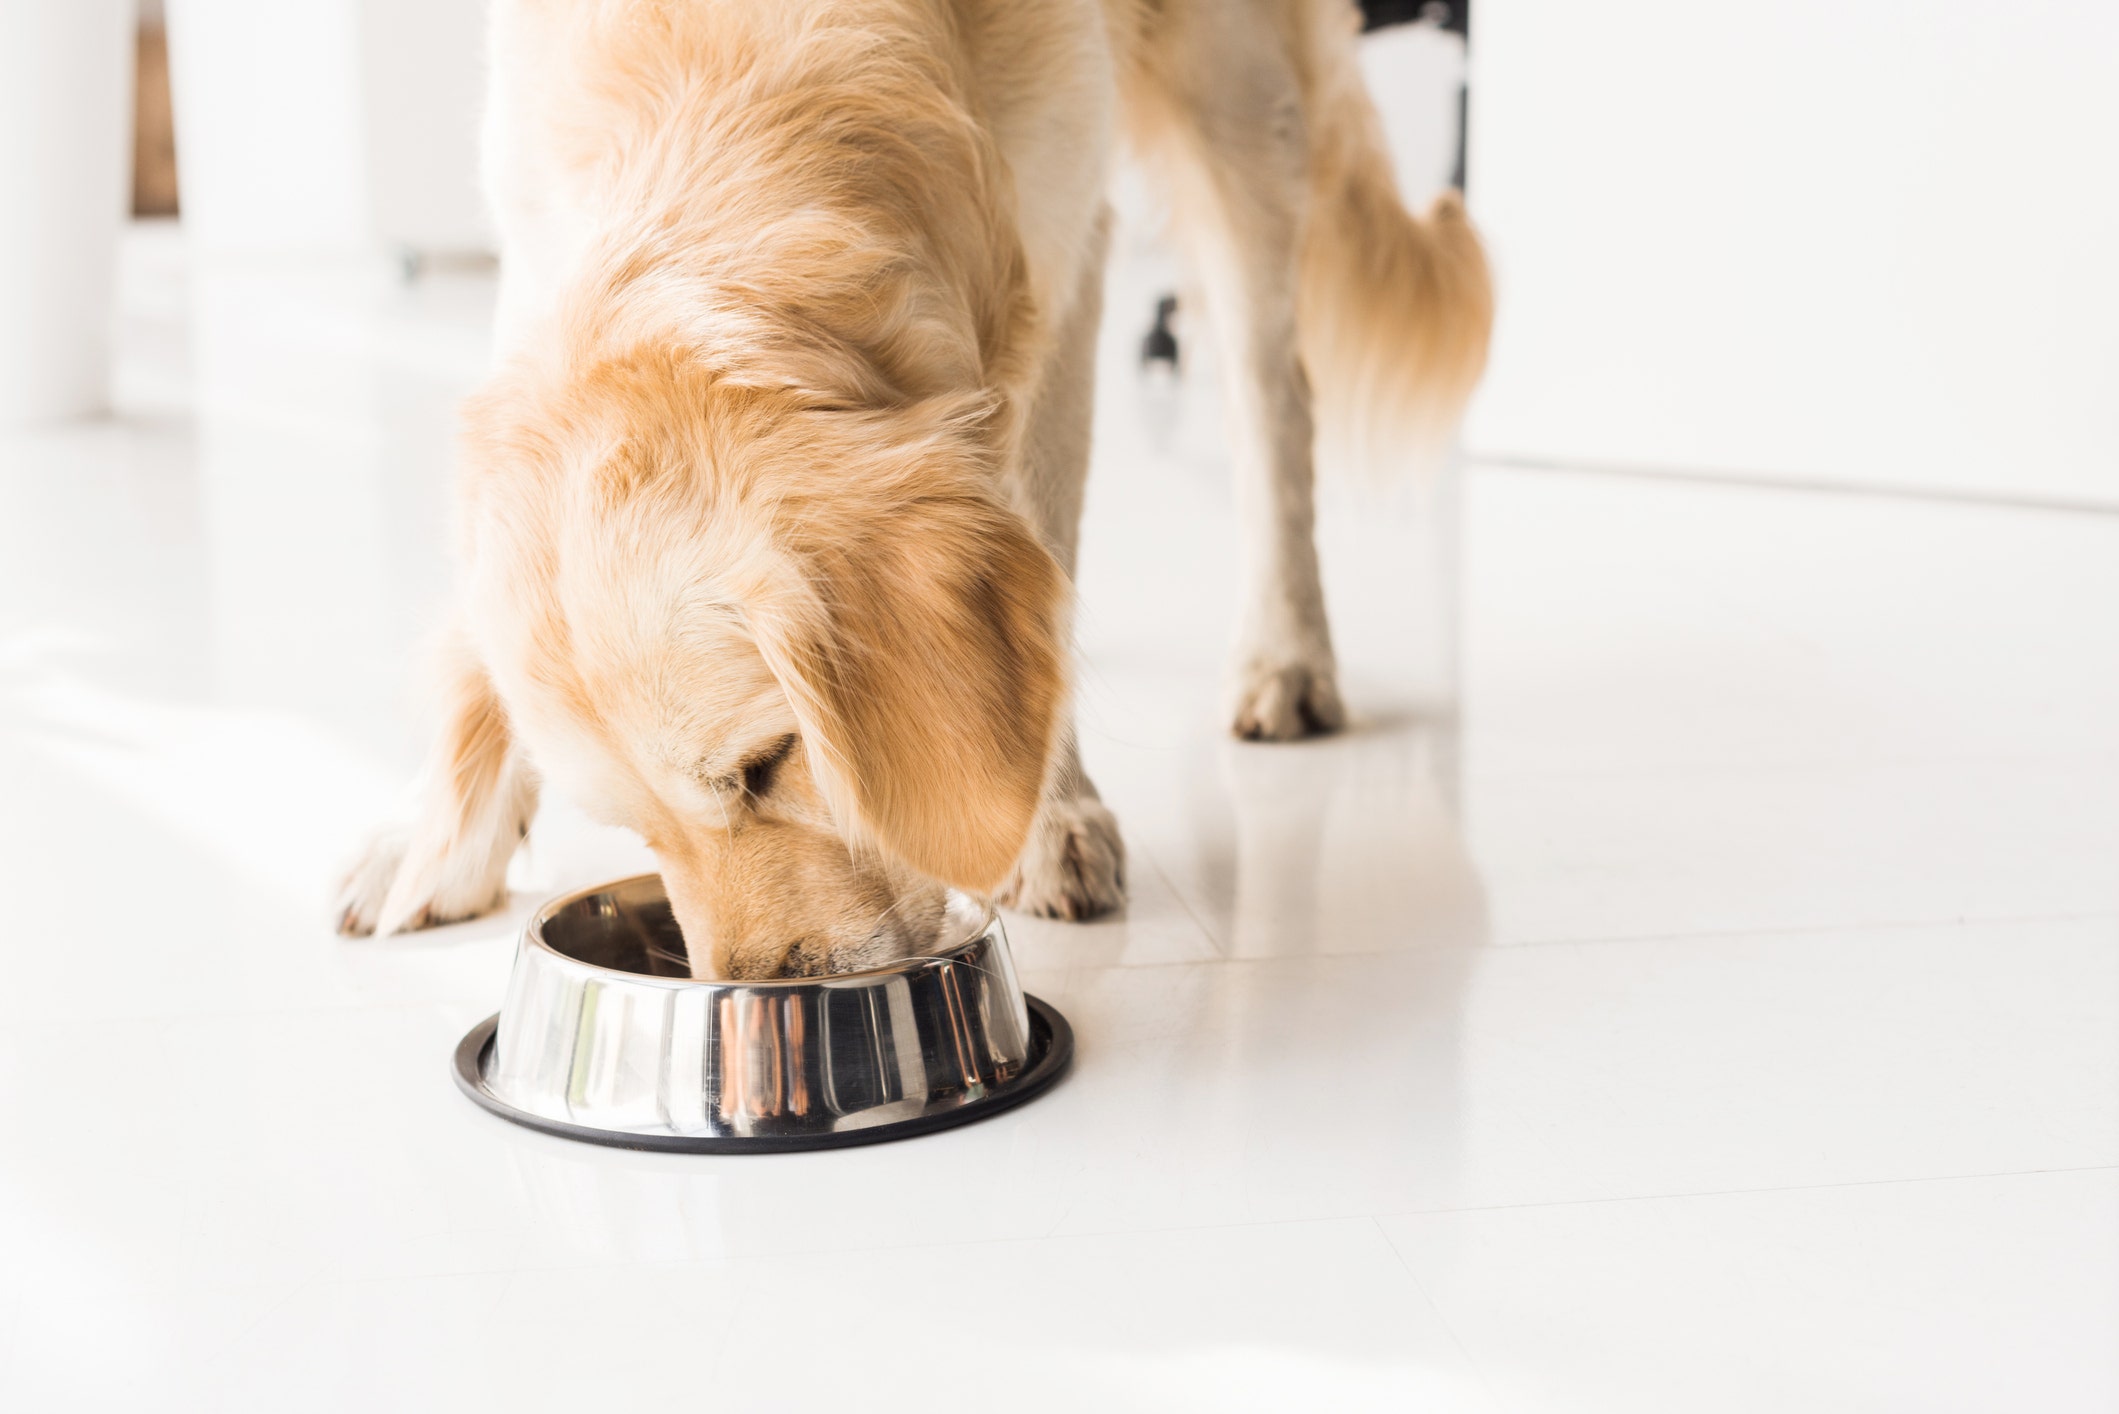 Dog food reminiscent of salmonella, listeria: FDA